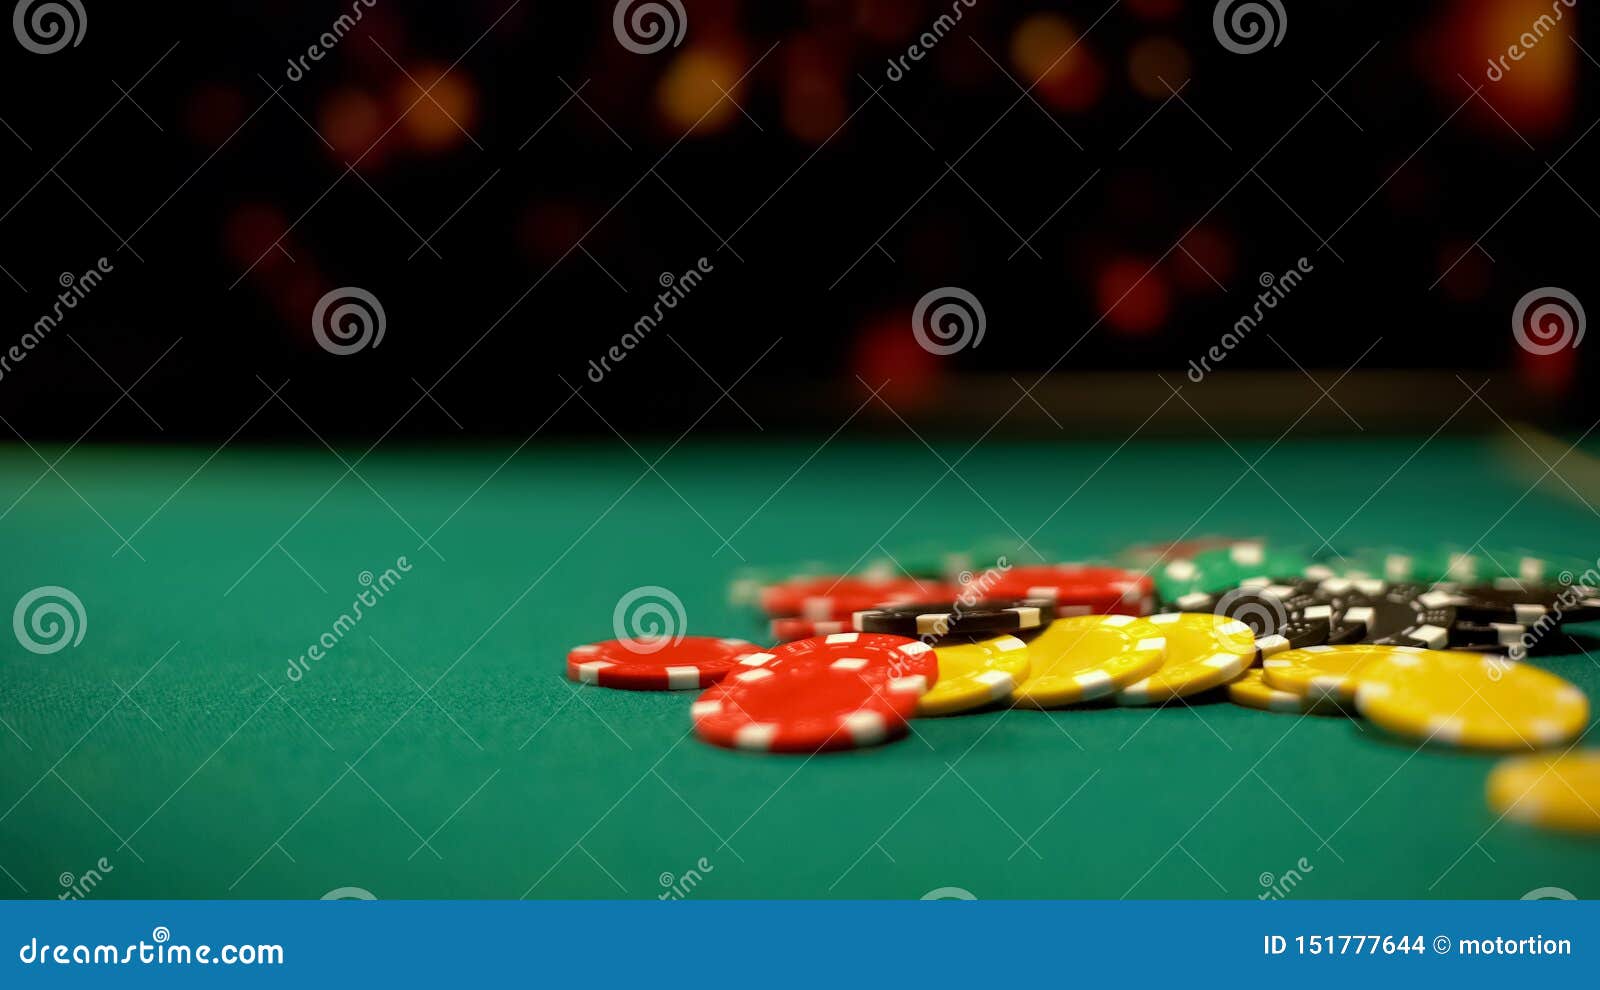 http://thumbs.dreamstime.com/z/poker-chips-lying-green-table-poker-blackjack-casino-games-betting-poker-chips-lying-green-table-poker-blackjack-151777644.jpg